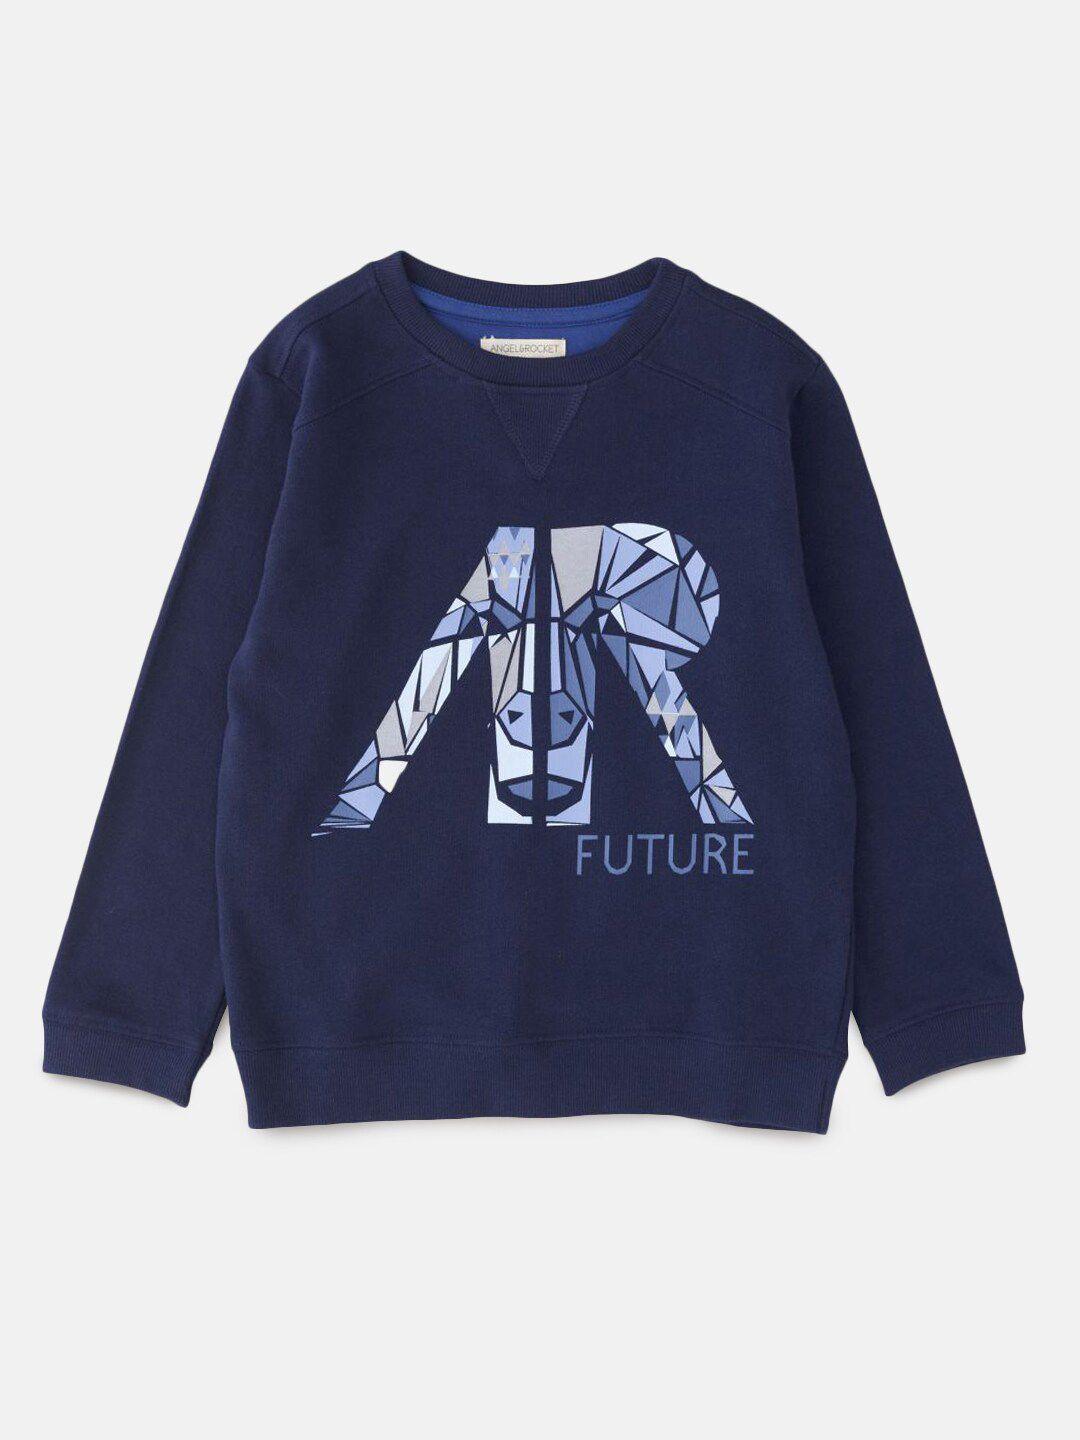 angel & rocket boys navy blue printed sweatshirt